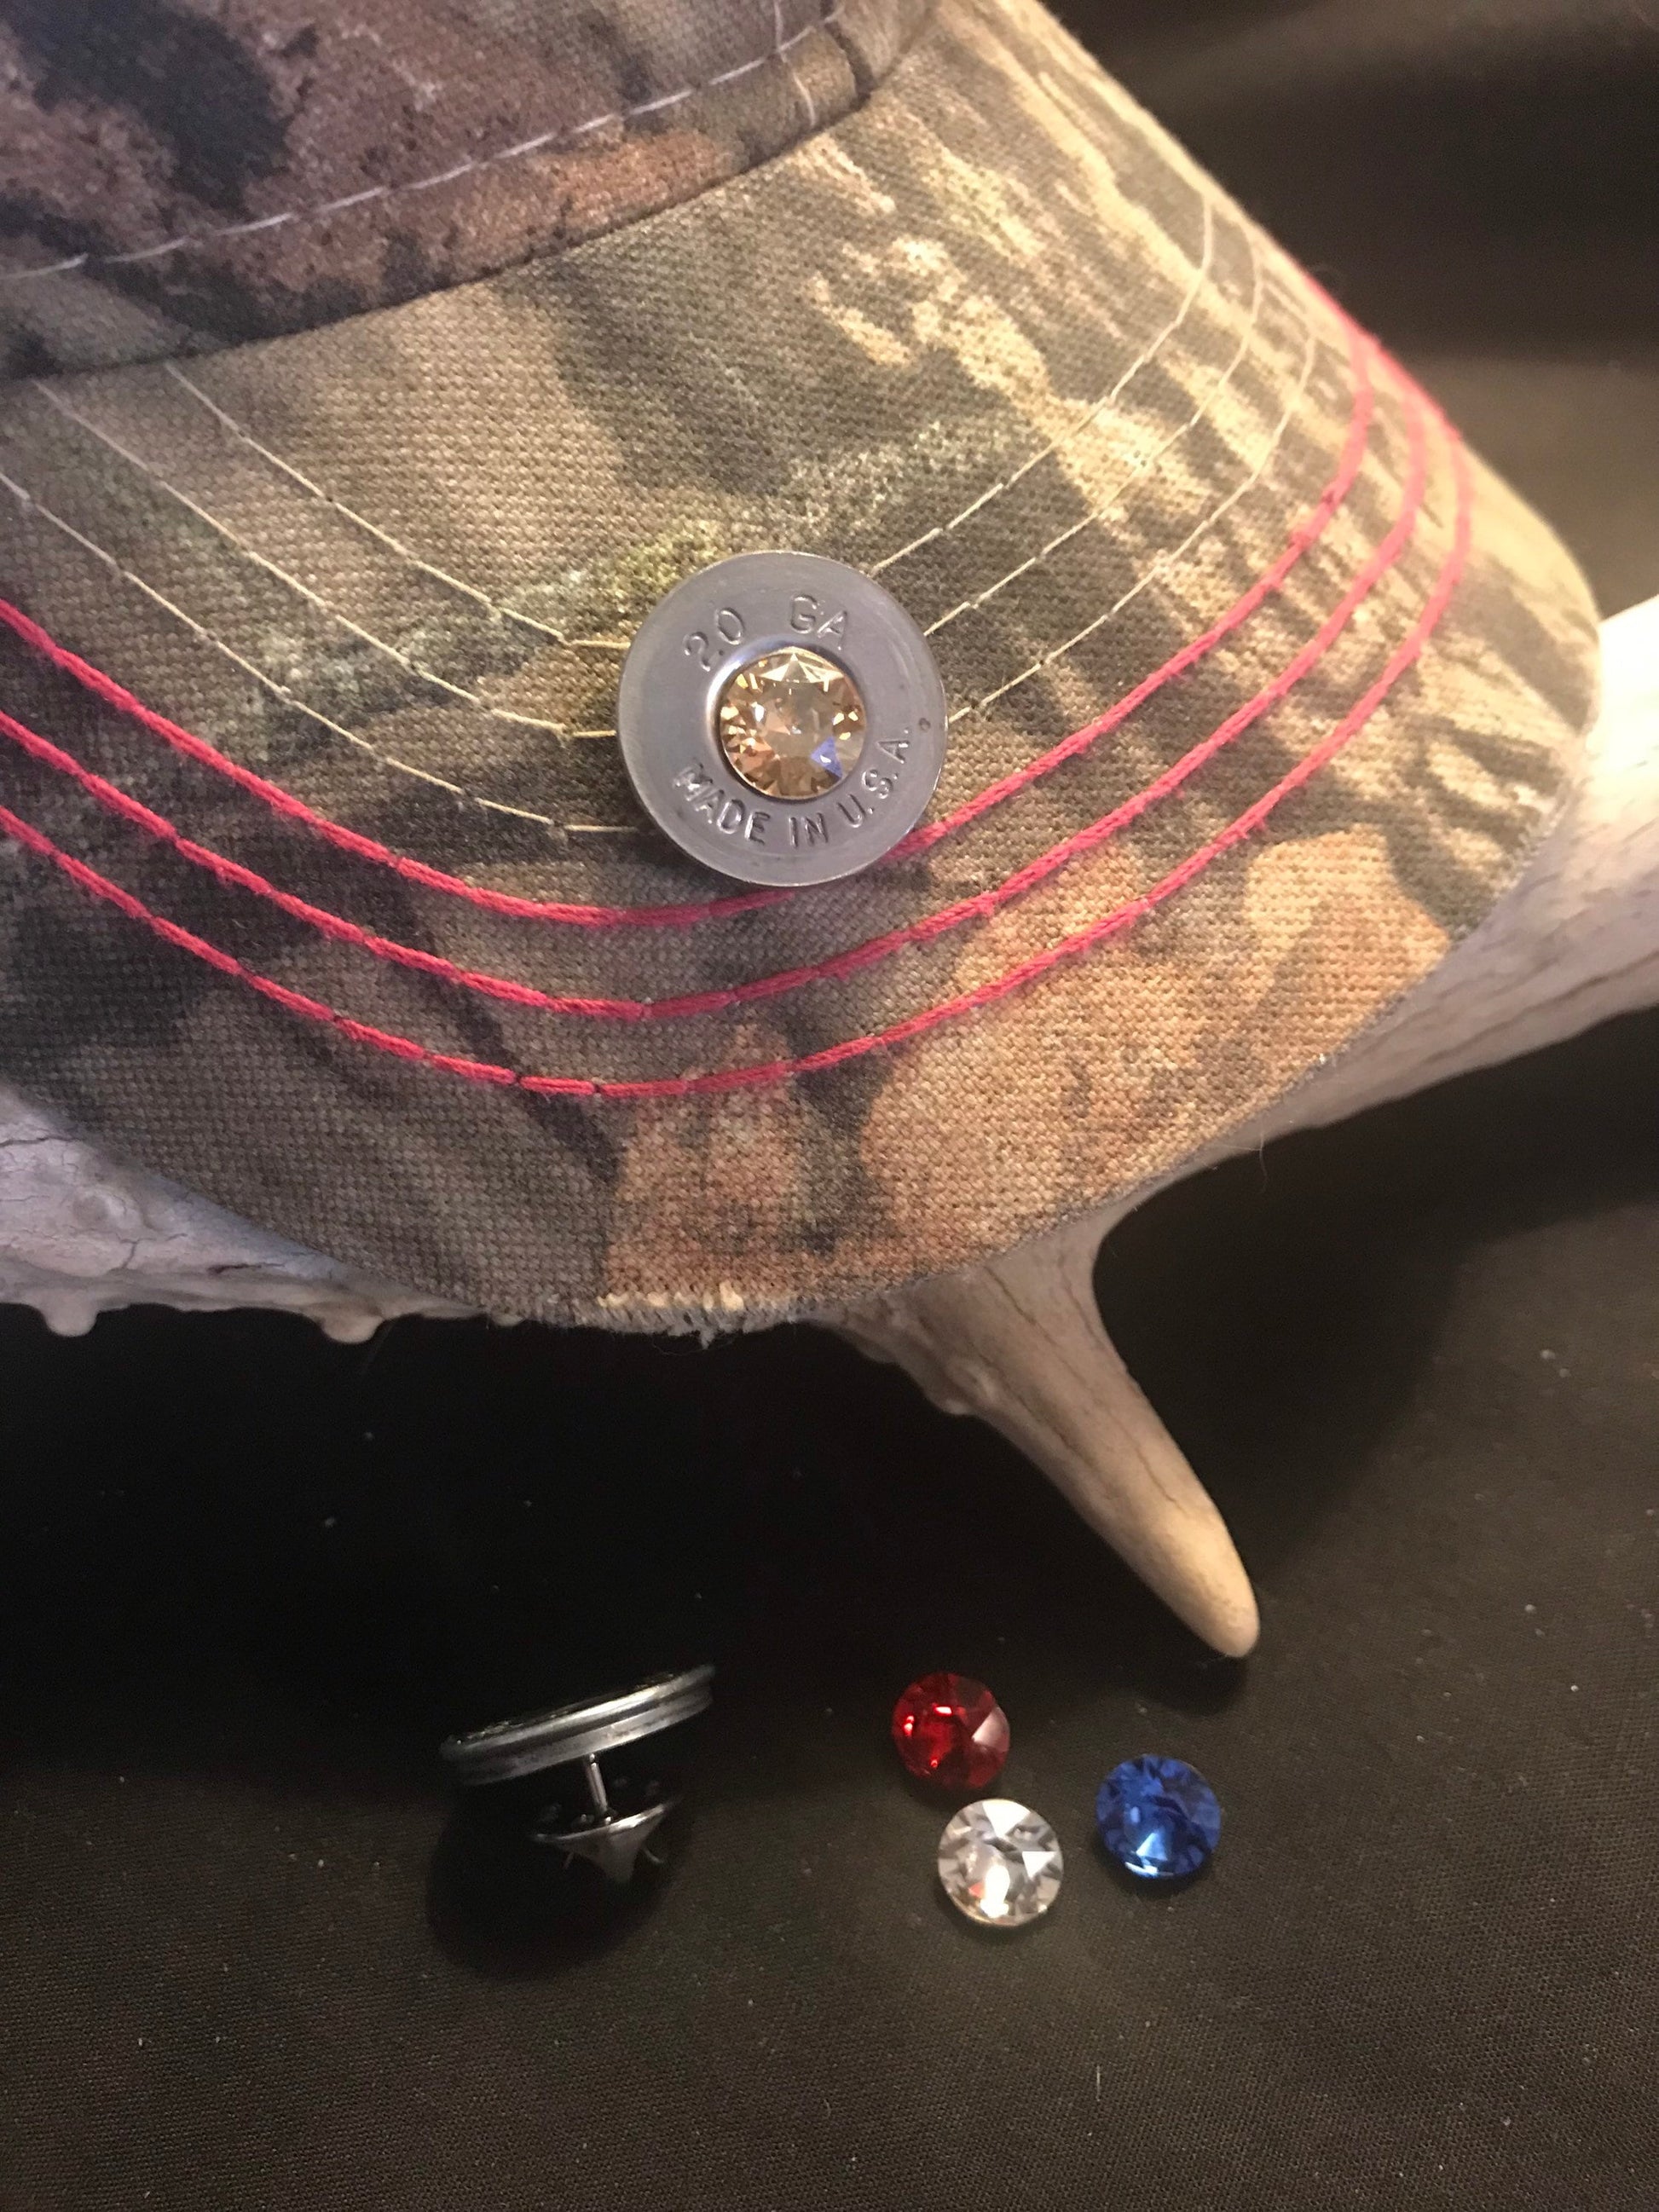 20 gauge shotgun hat pin, lapel pin